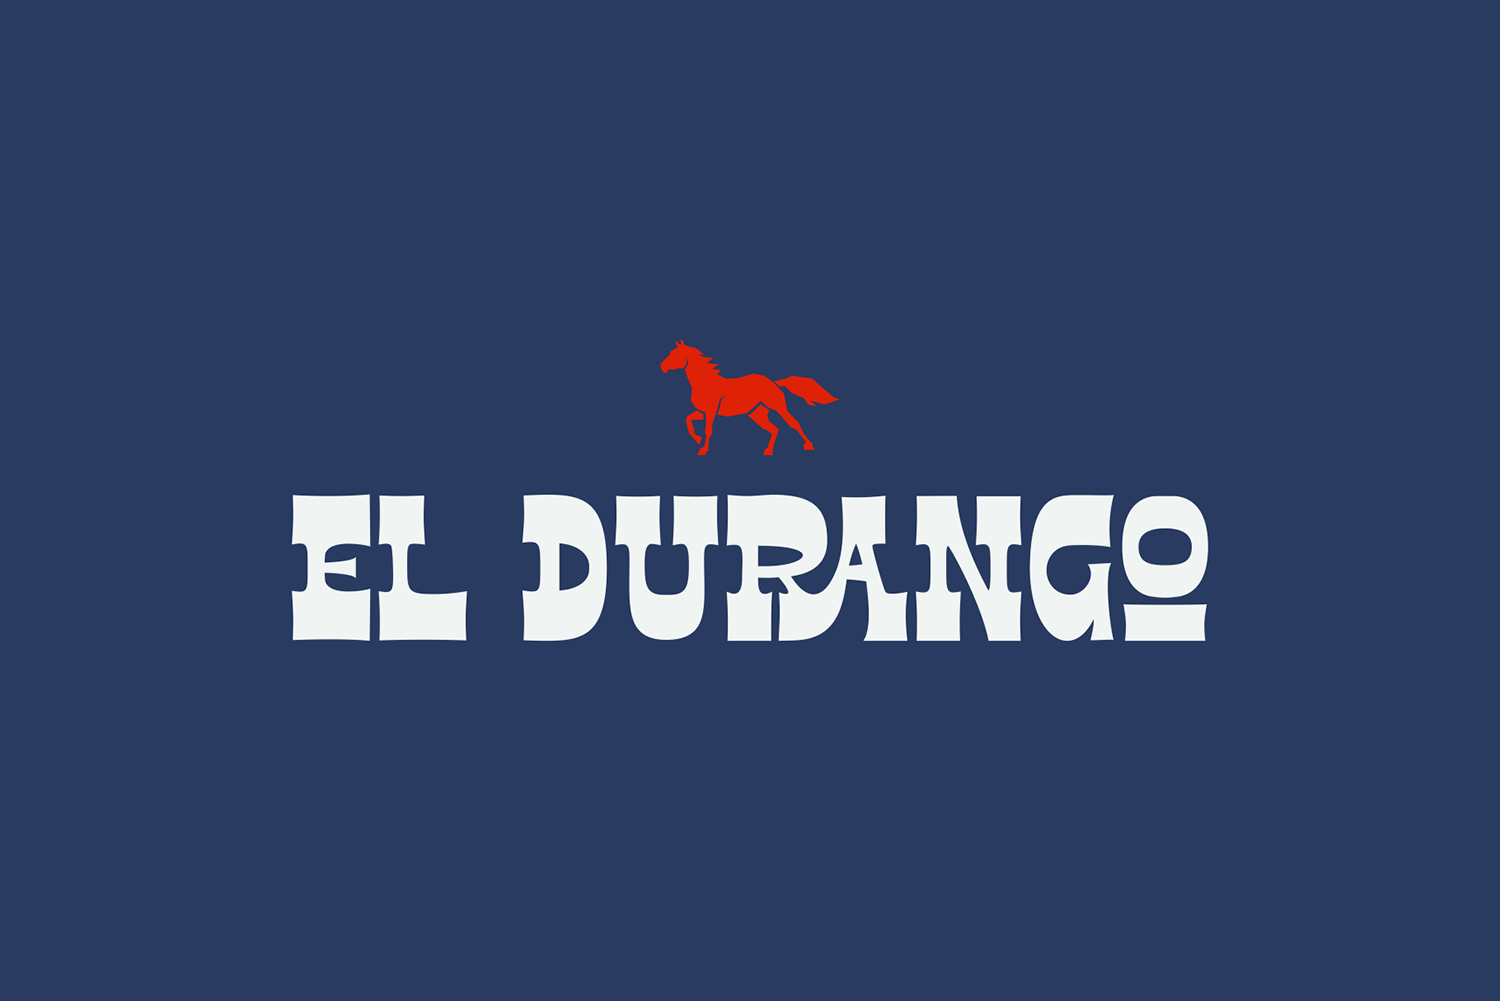 El Durango Free Font